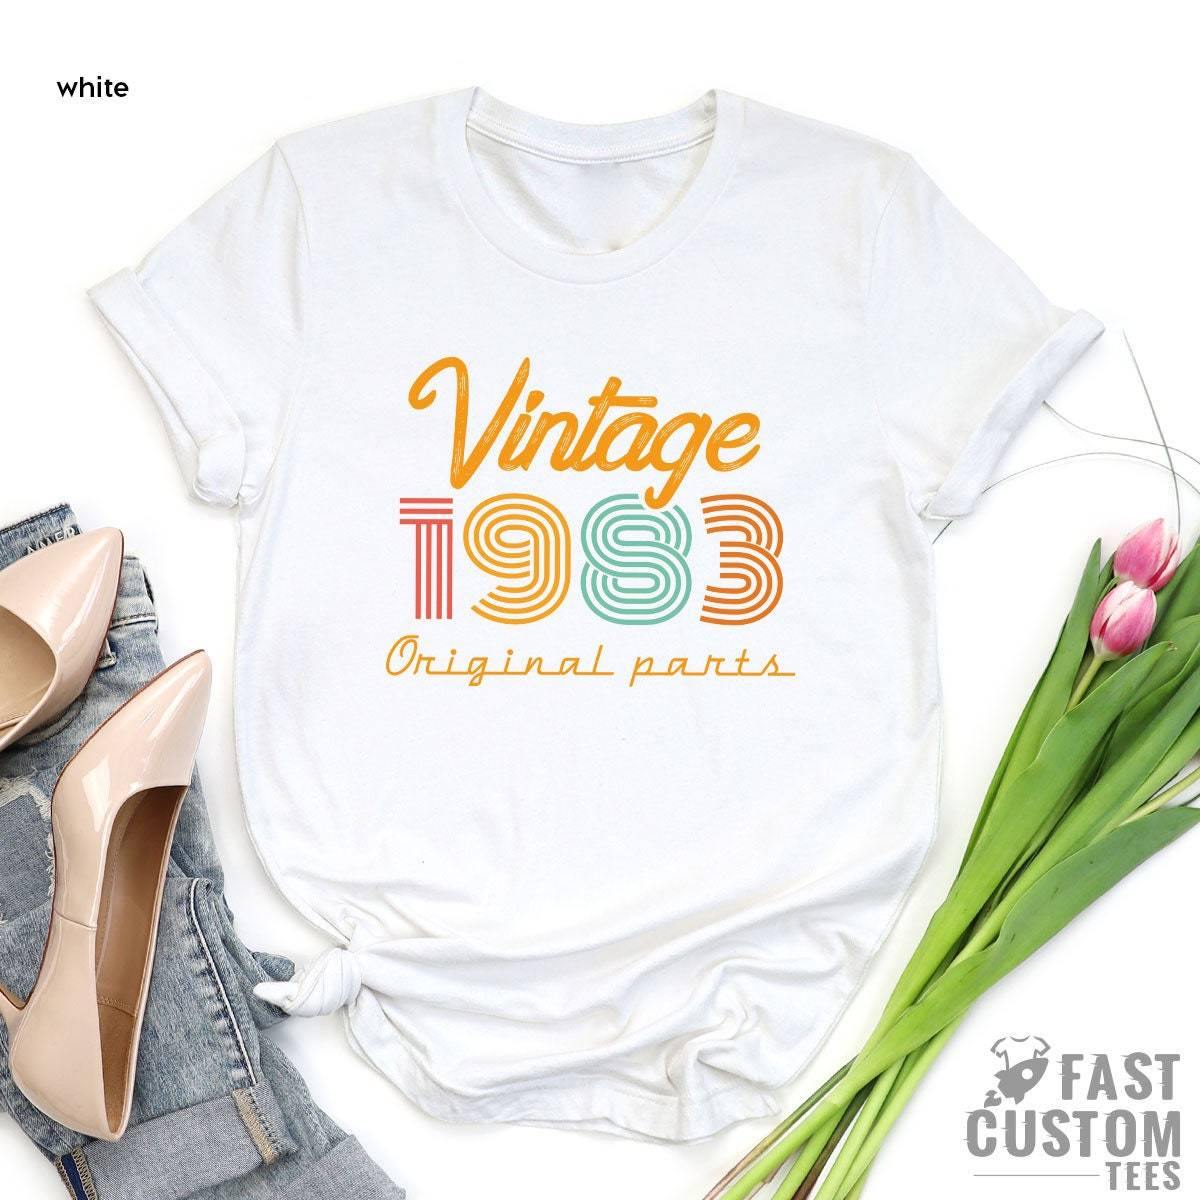 38th Birthday Shirt, Vintage T Shirt, Vintage 1983 Shirt, 38th Birthday Gift For Women, 38th Birthday Shirt Men, Retro Shirt, Vintage Shirts - Fastdeliverytees.com